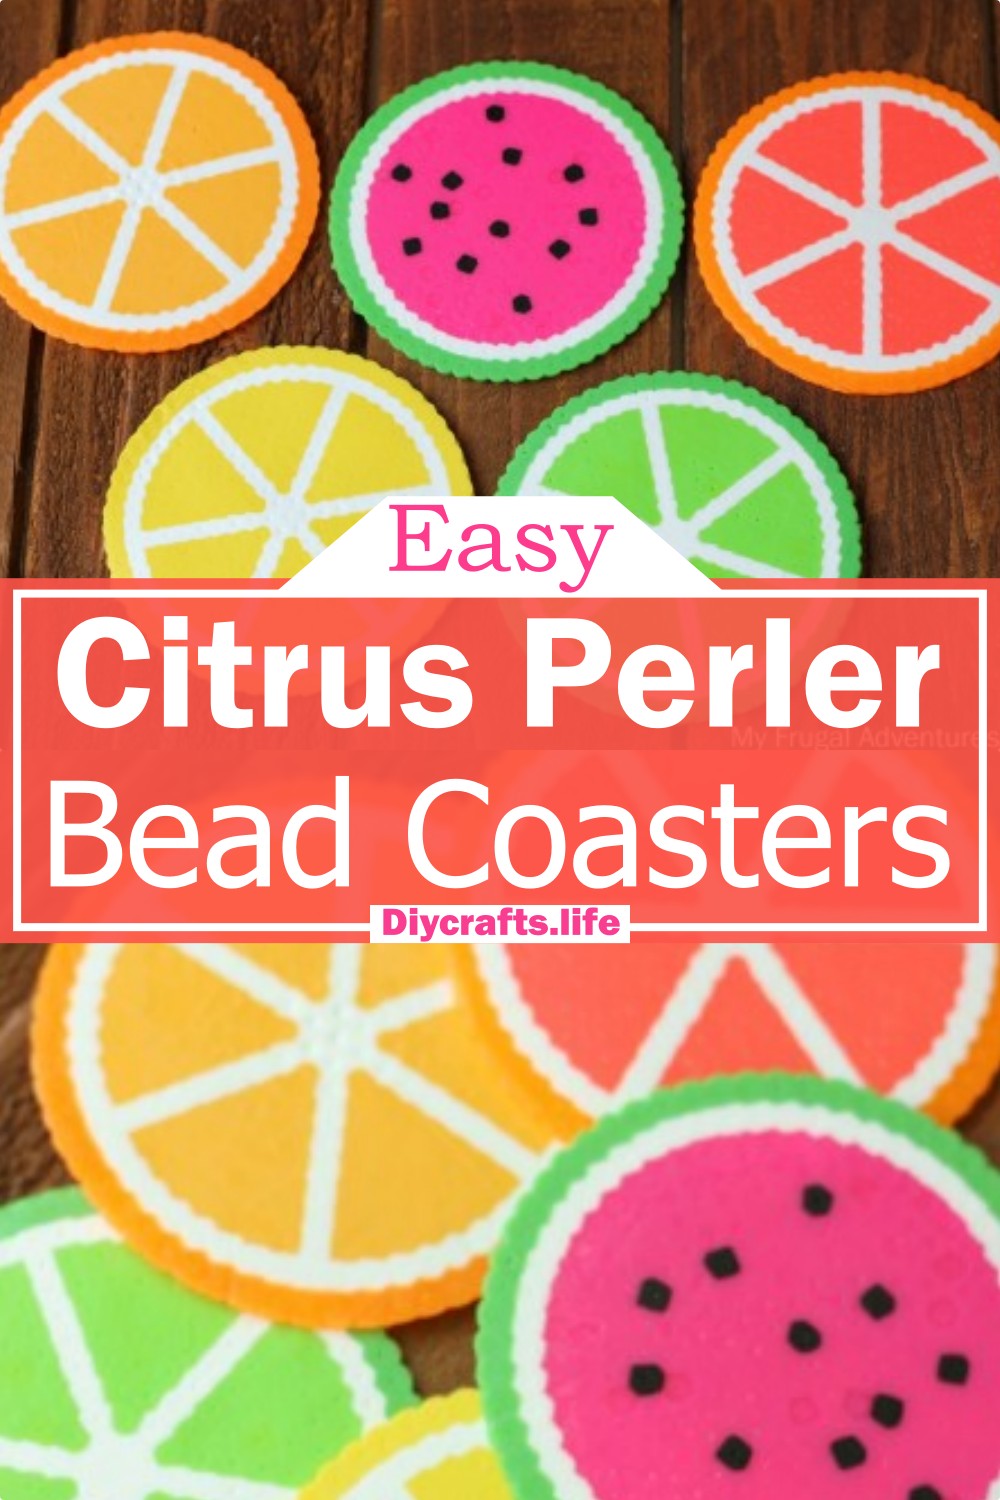 Citrus Perler Bead Coasters